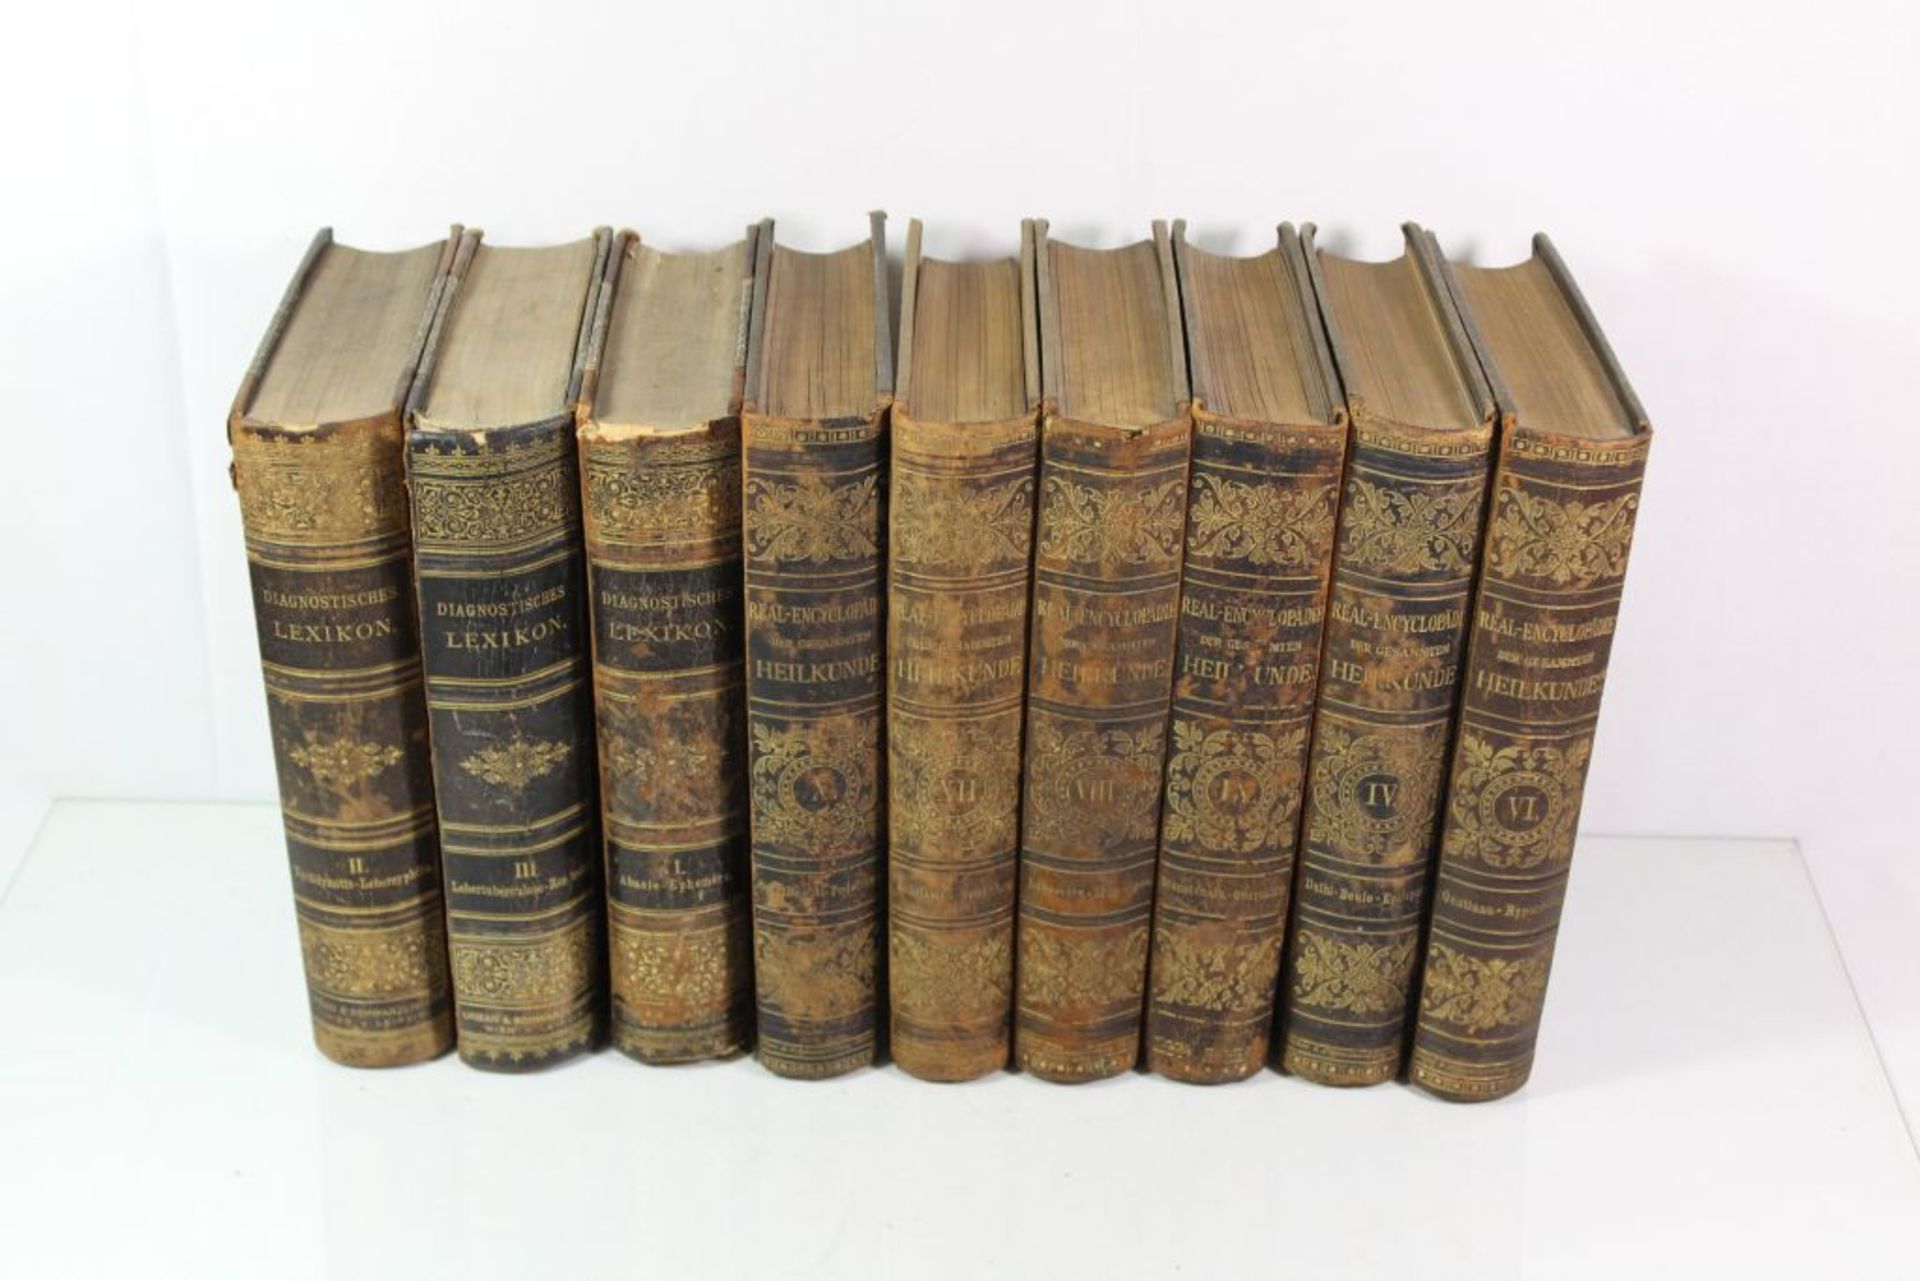 3 Bände Diagnostisches Lexikon 1893 Band 1-3, 6 Bände Real-Encyclopädie der Gesammten Heilkunde 1882